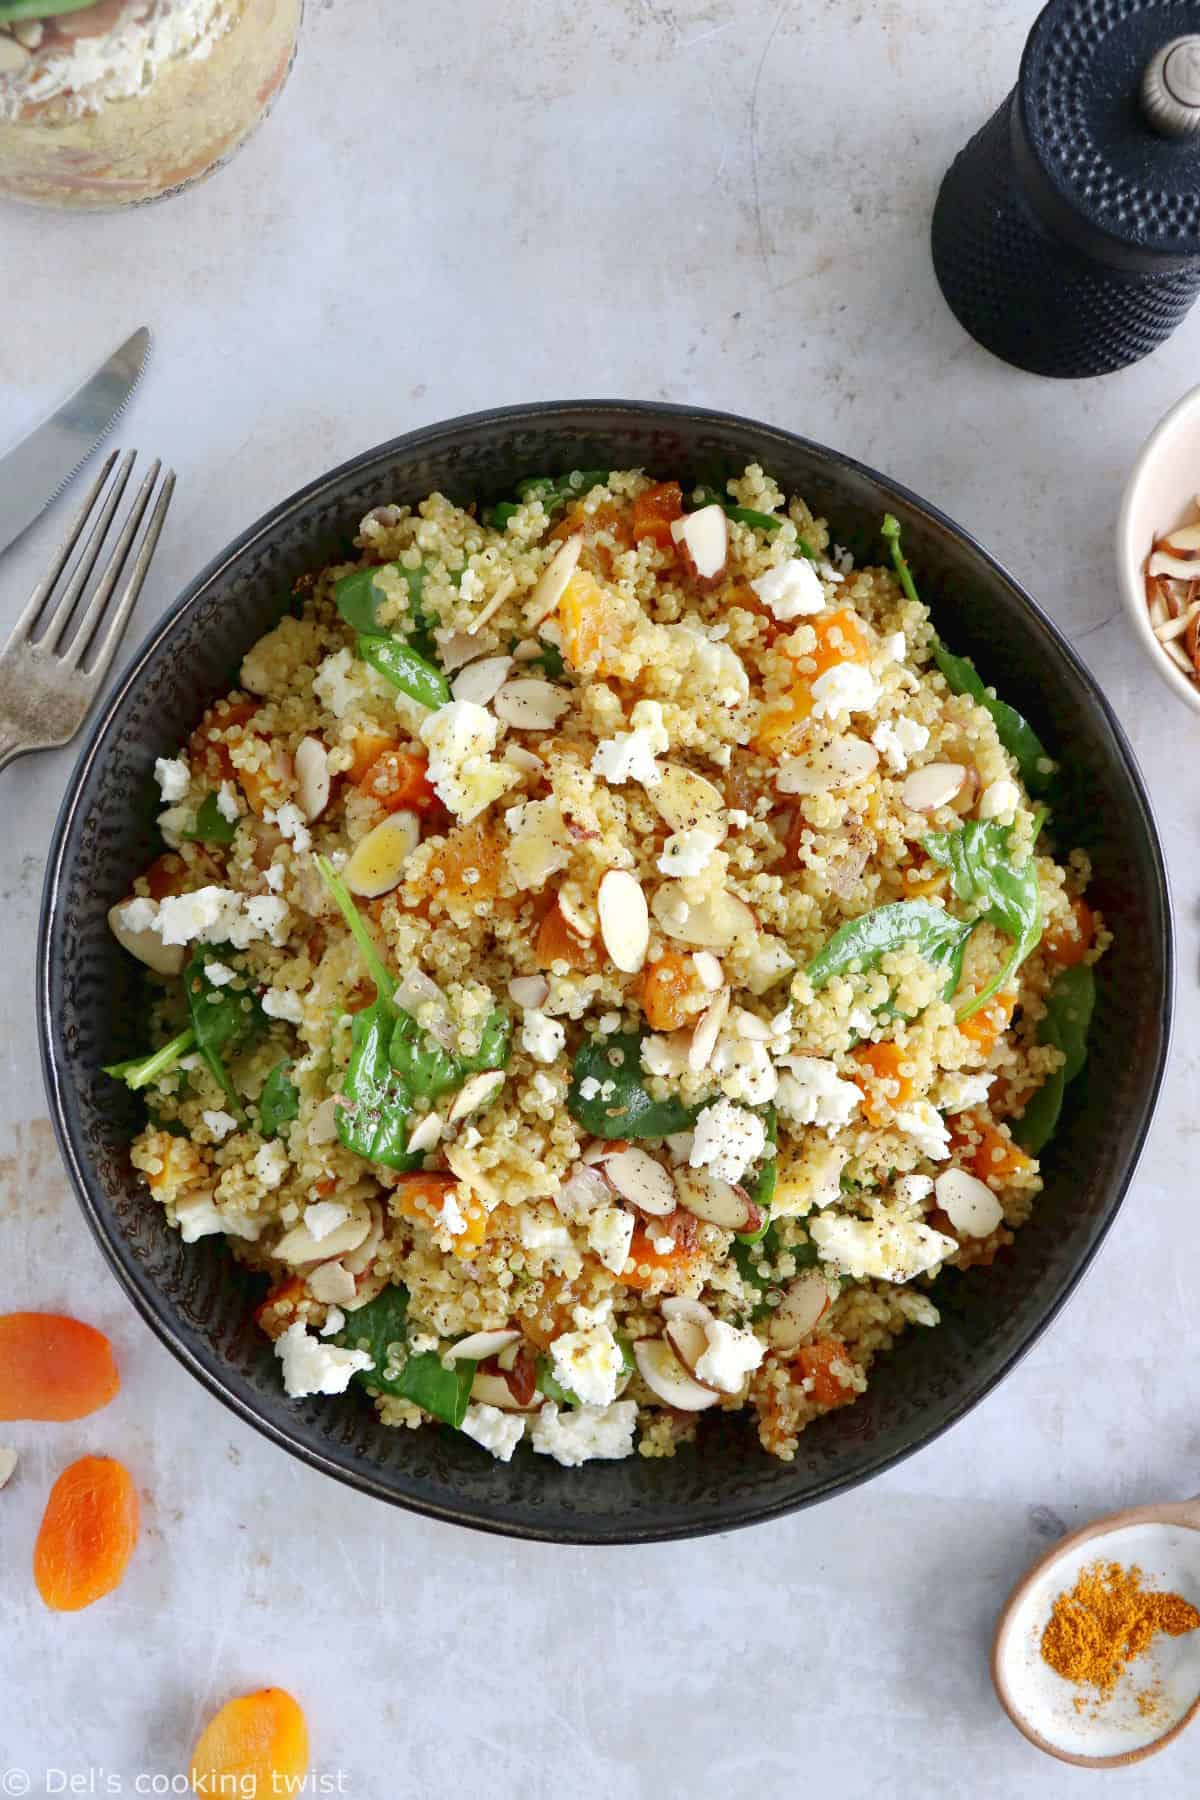 Plongez dans les mille saveurs de cette salade de quinoa, abricots et feta, agrémentée d'une vinaigrette citronnée au curry.